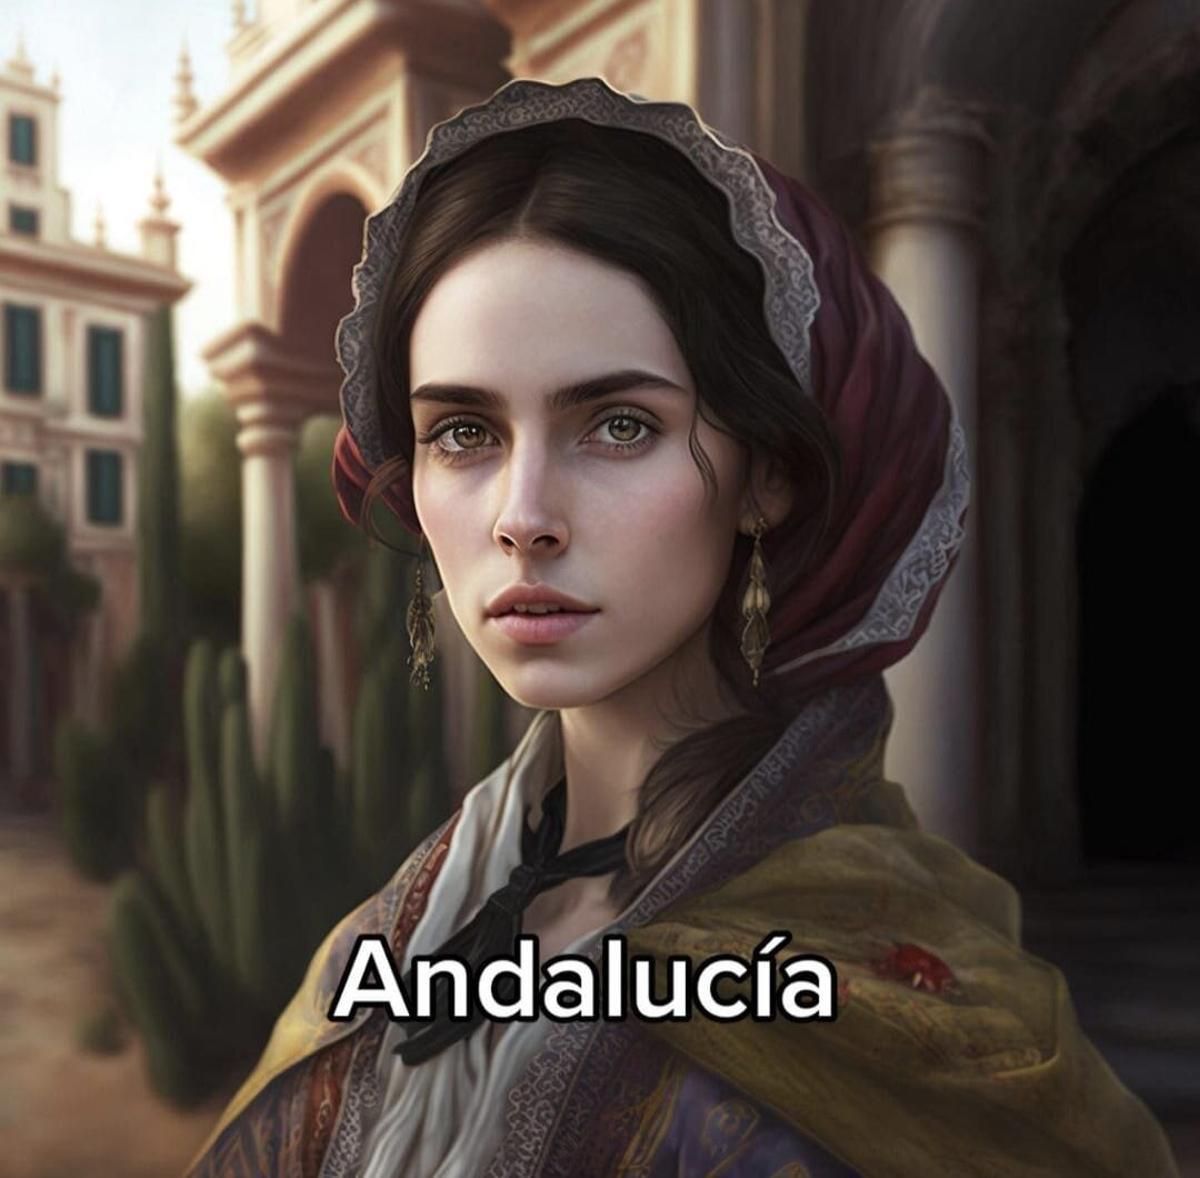 Andalucía retratada por una IA.